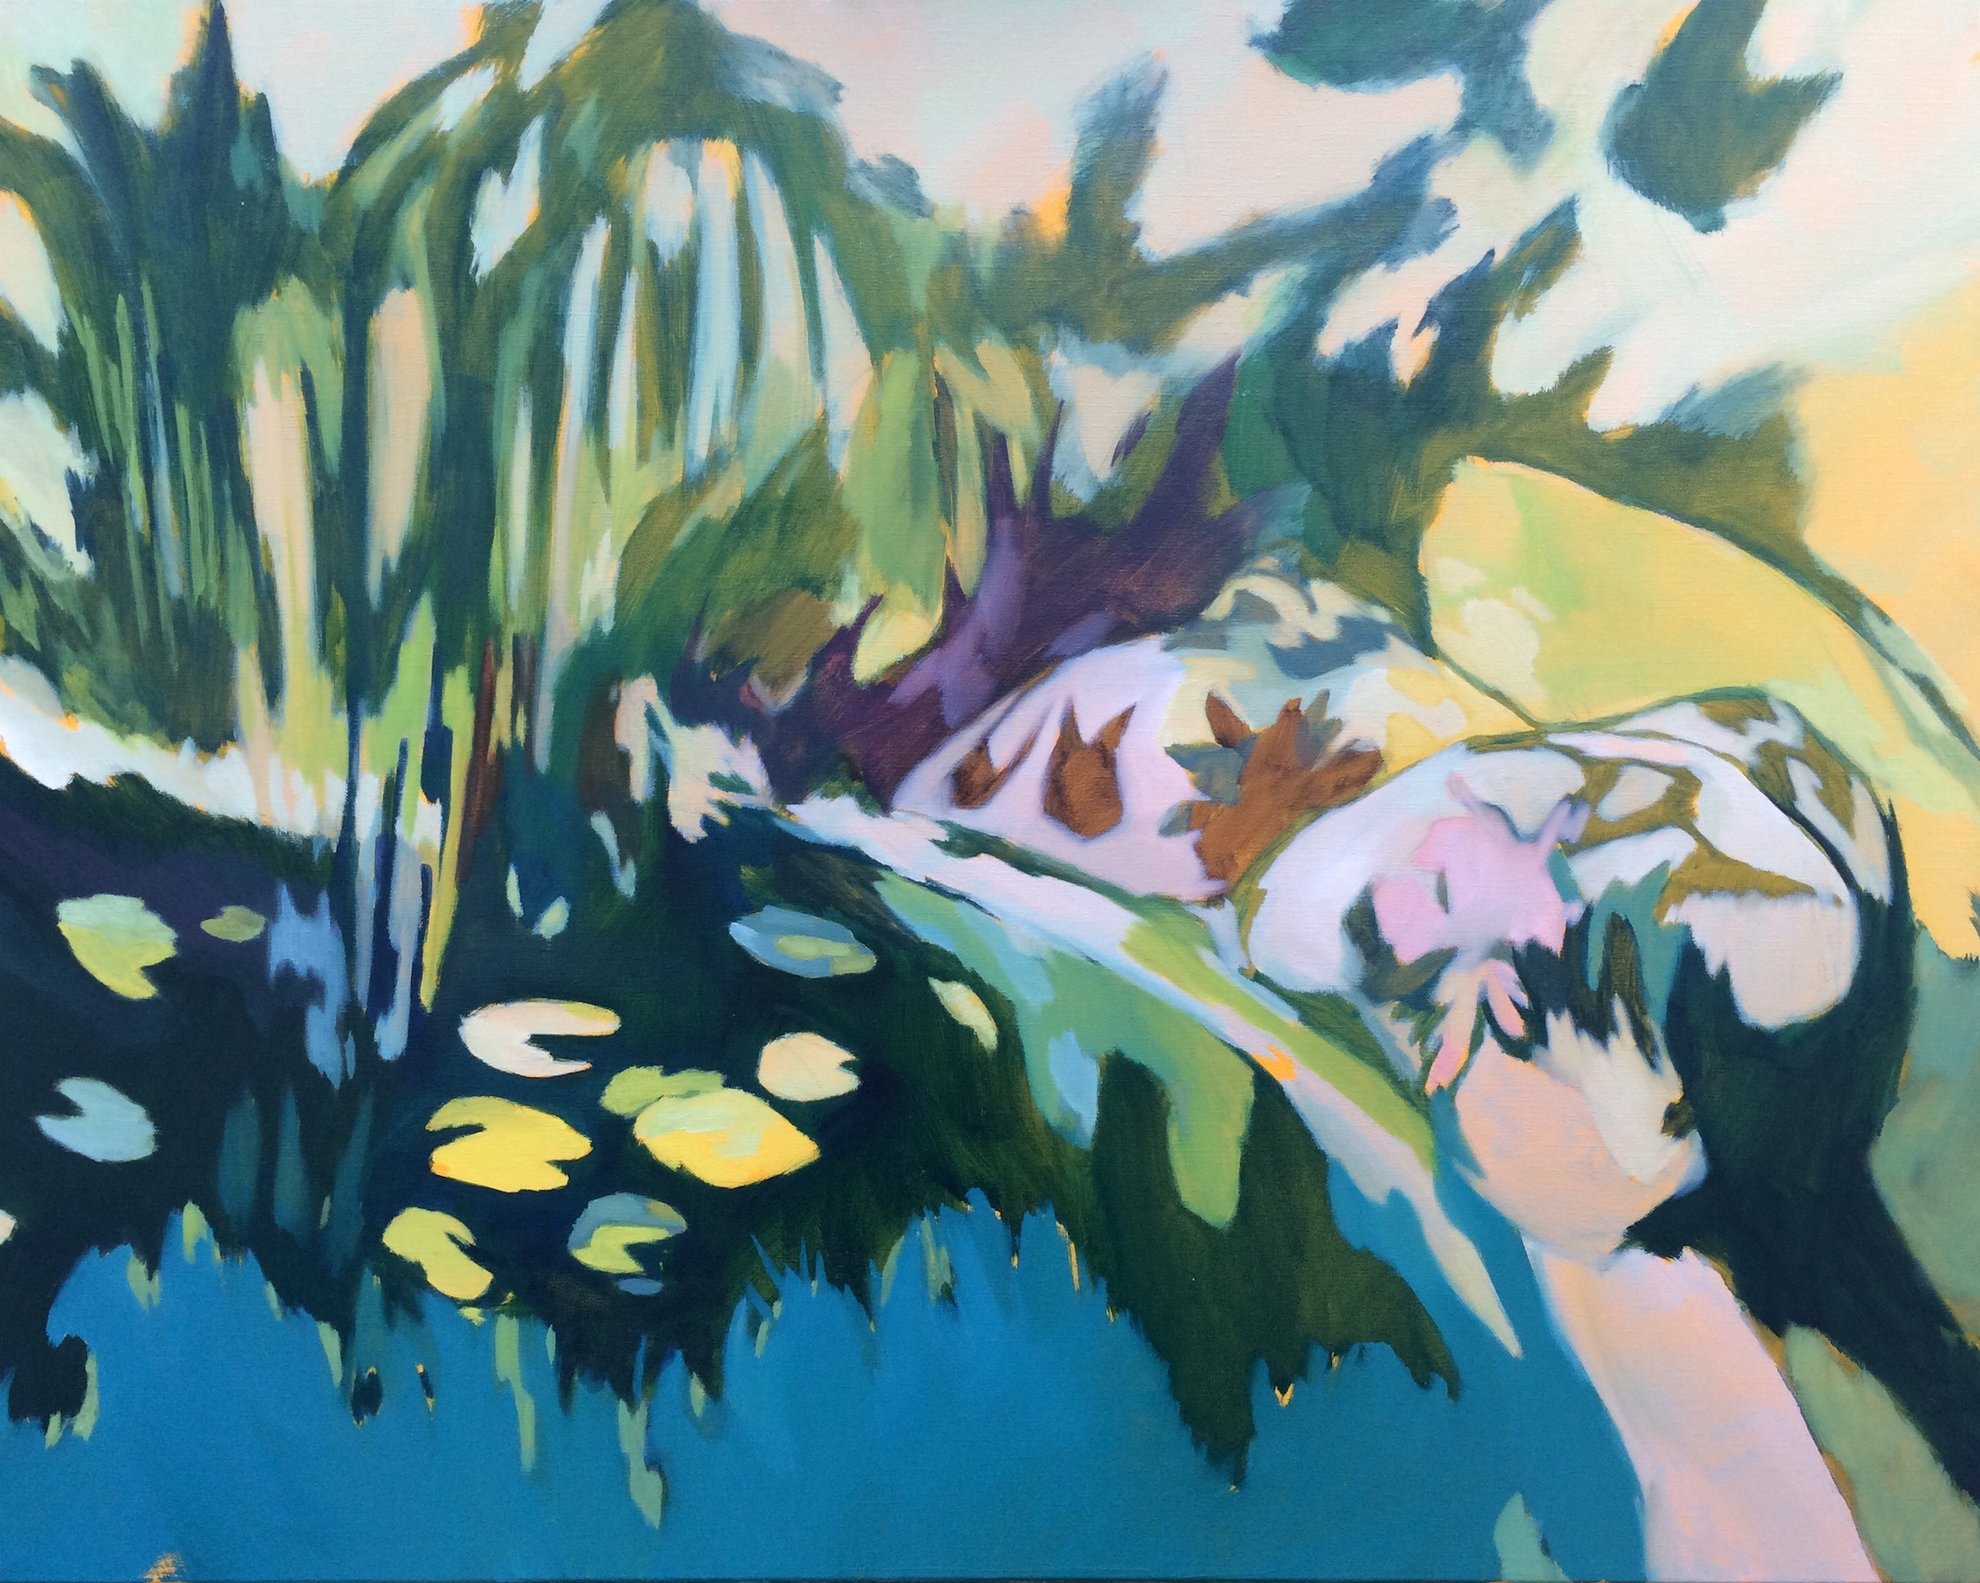 SOMMEIL, huile sur toile, 73 x 92 cm, 2017